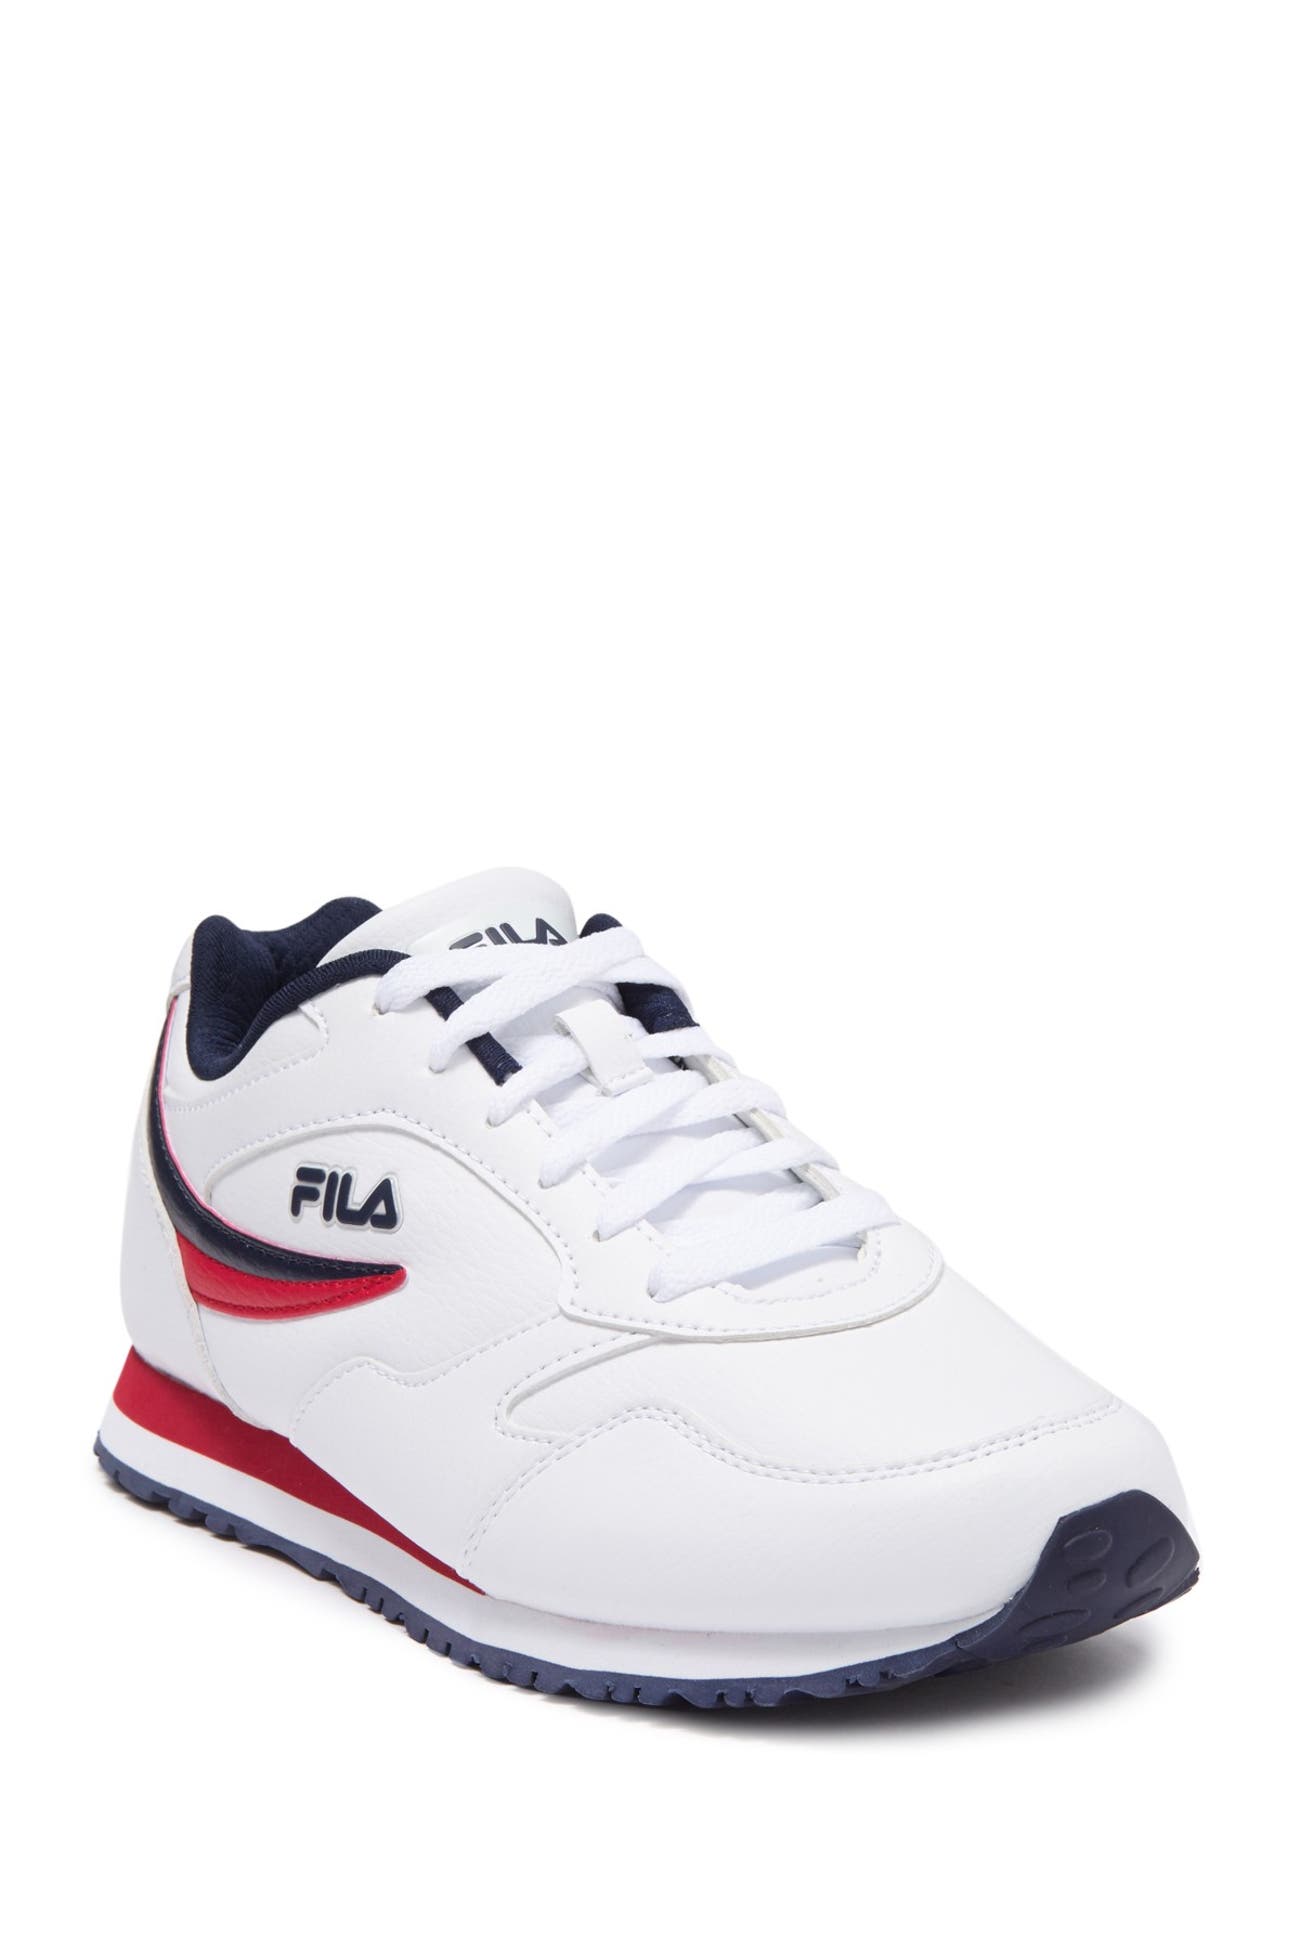 FILA USA | Classico 18 Sneaker | Nordstrom Rack